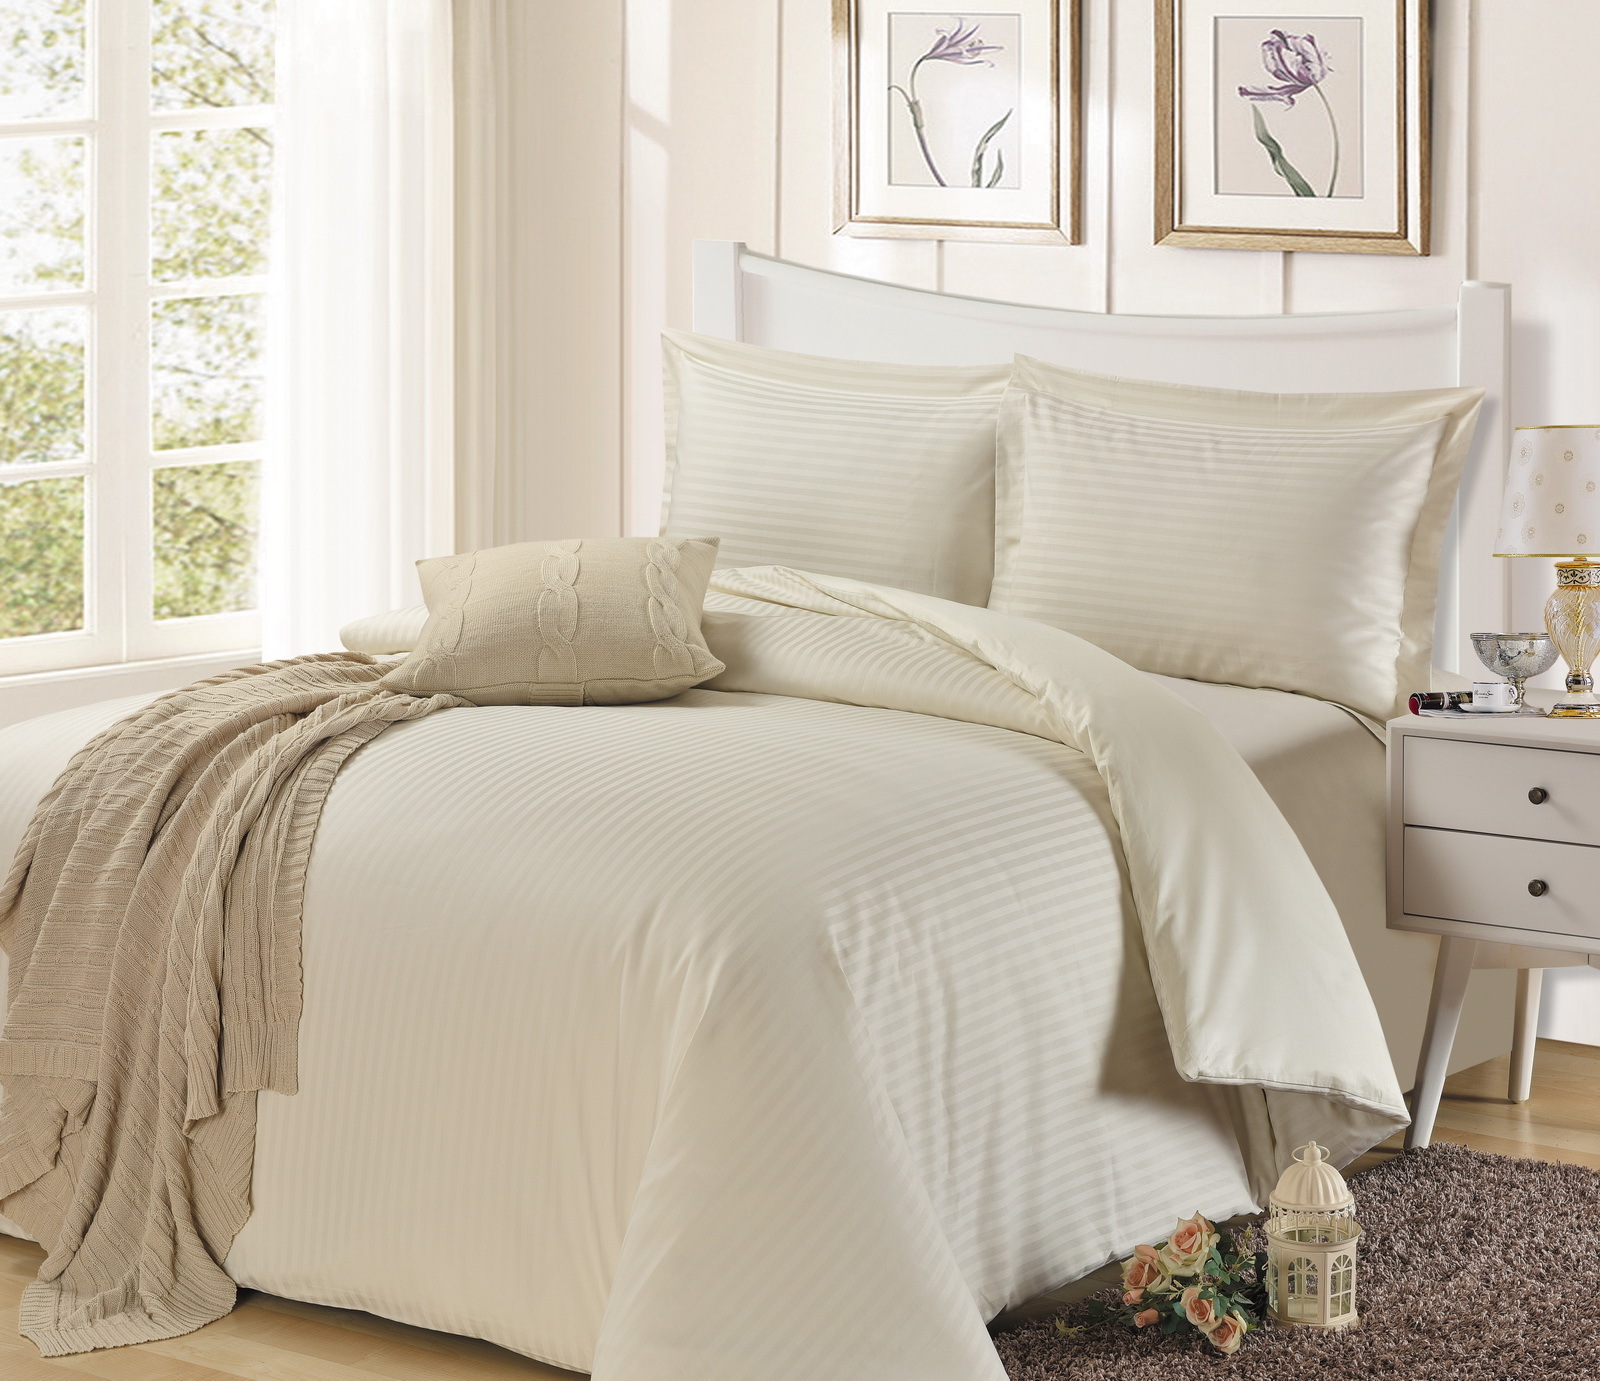 1200 Thread Count Egyptian Cotton Select Bedding Linen AU Sizes White Striped 